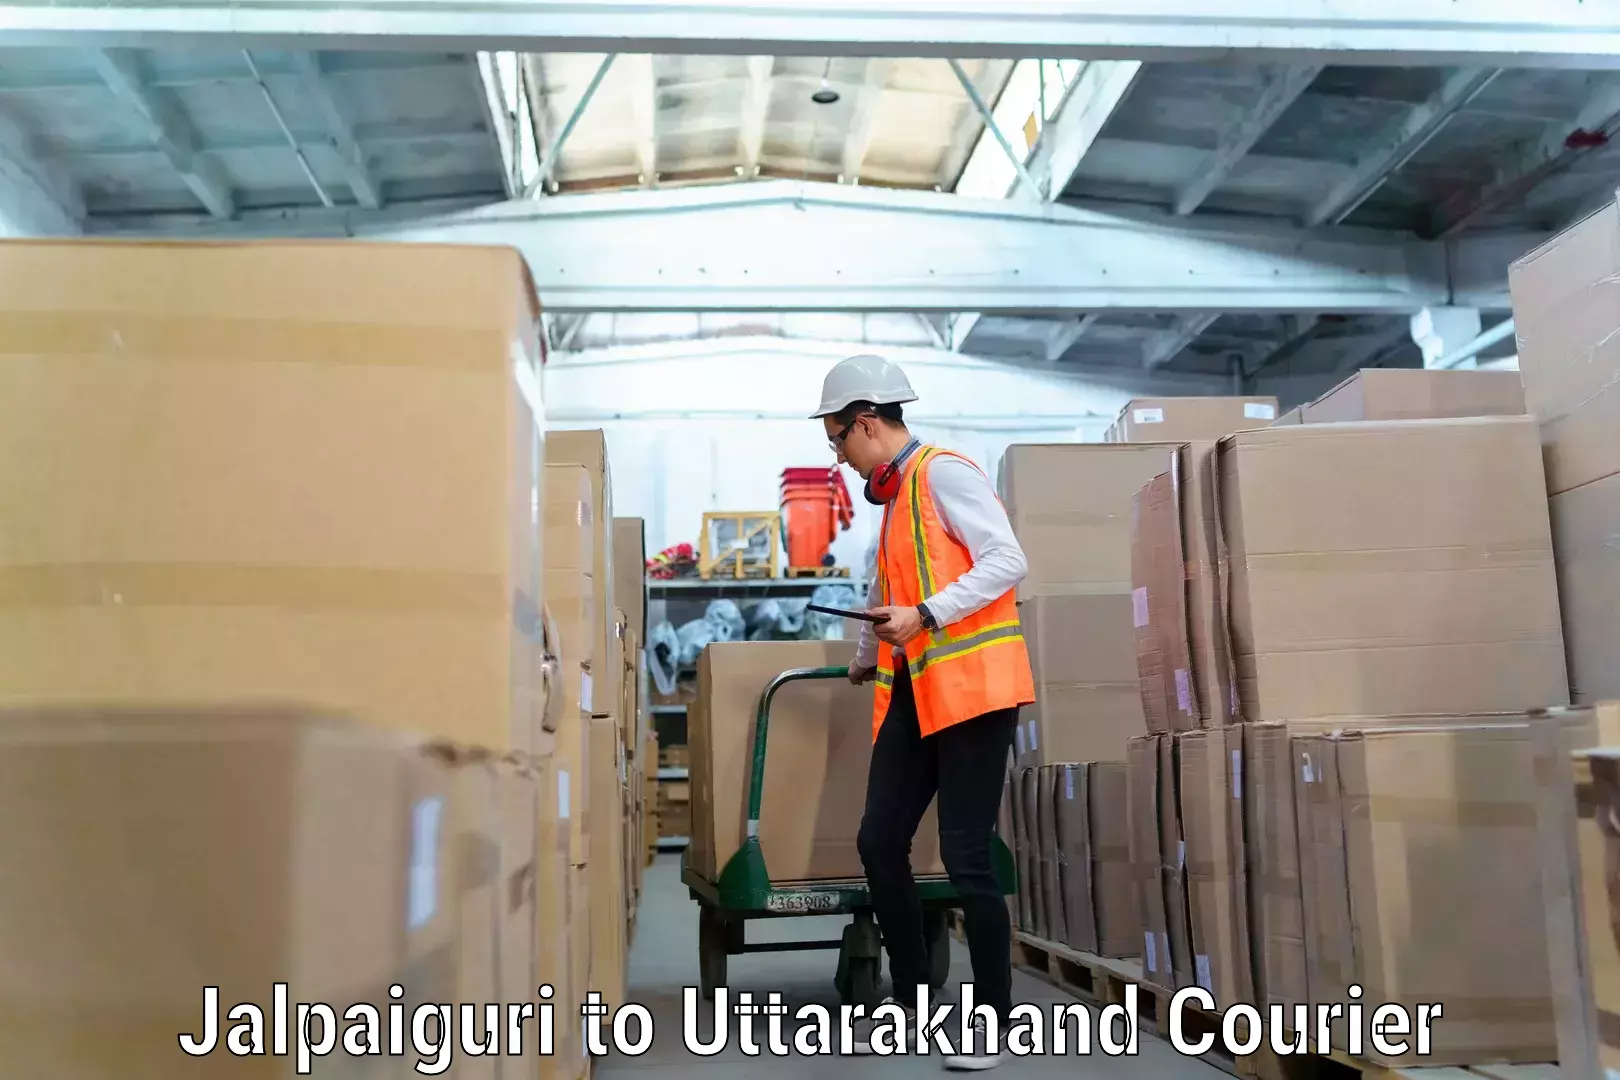 Trusted moving company Jalpaiguri to Uttarakhand